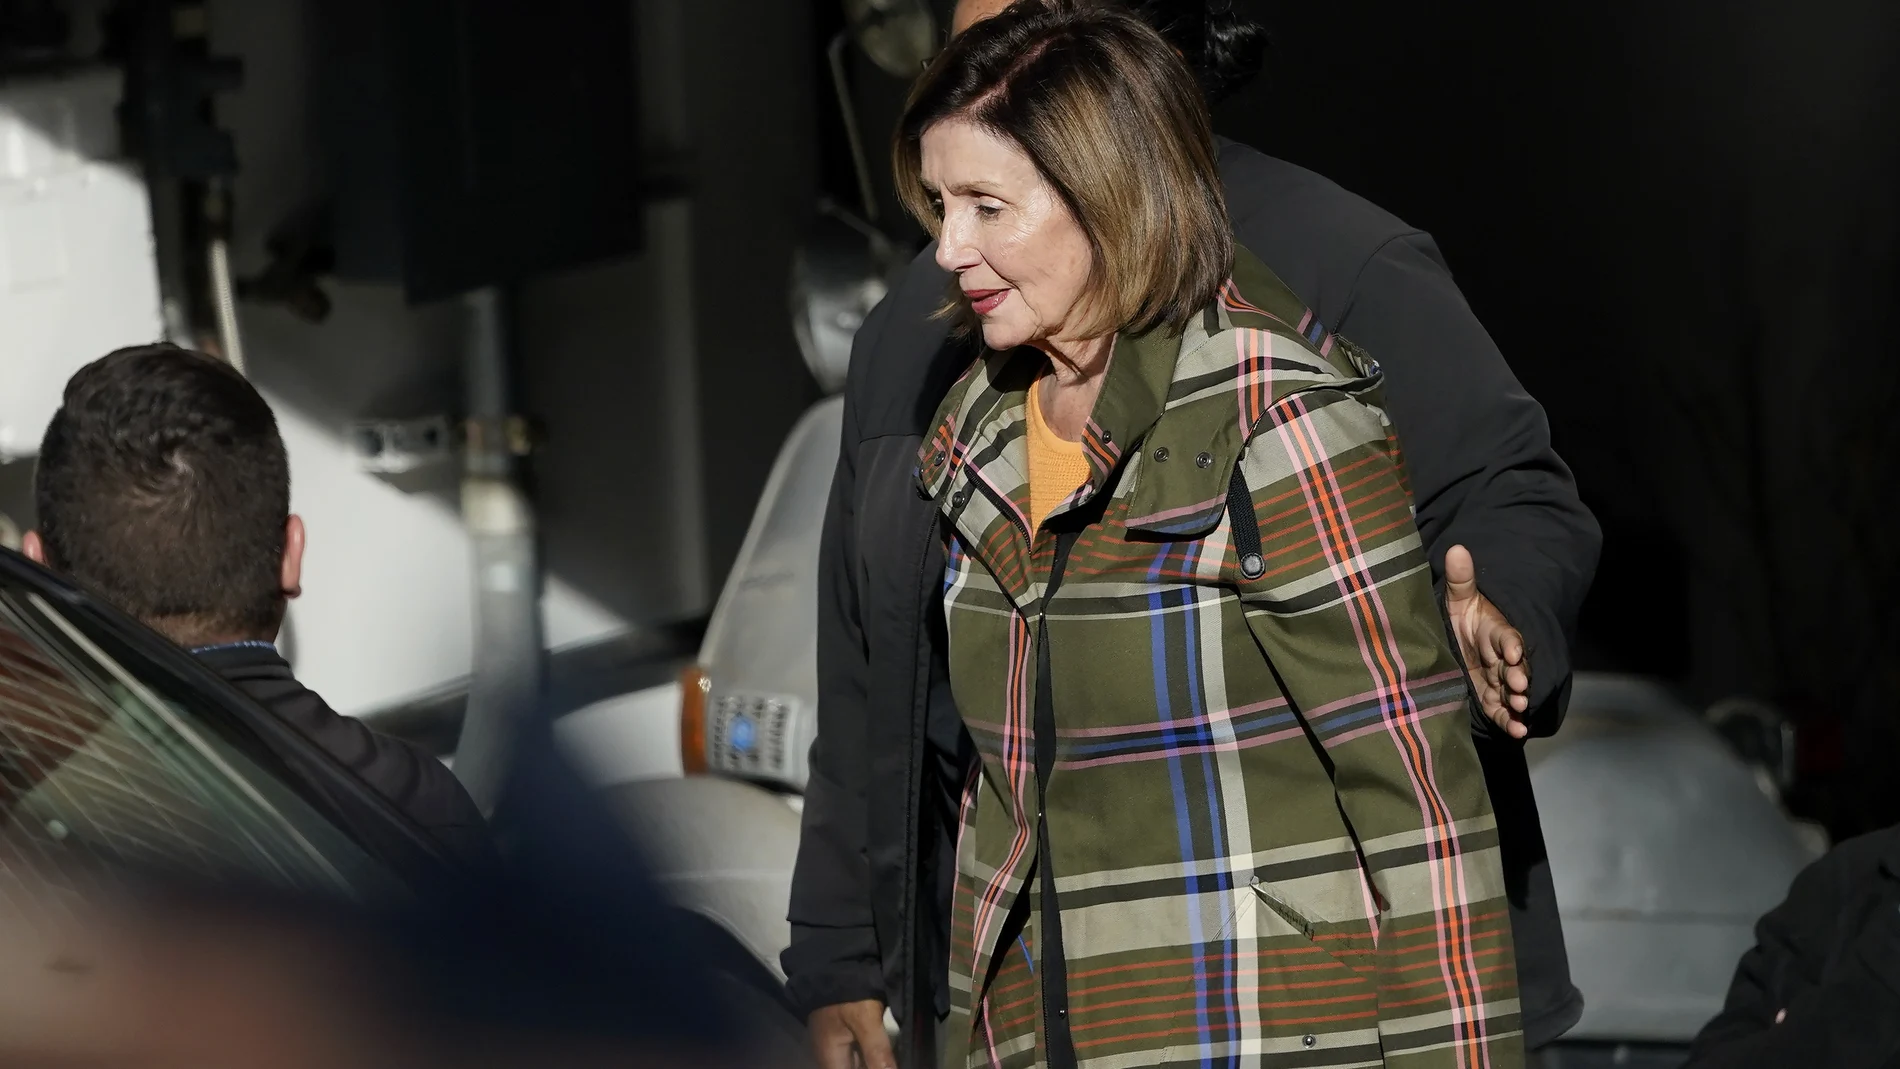 La presidenta de la Cámara de Representes, Nancy Pelosi, abandona su domicilio en San Francisco el miércoles